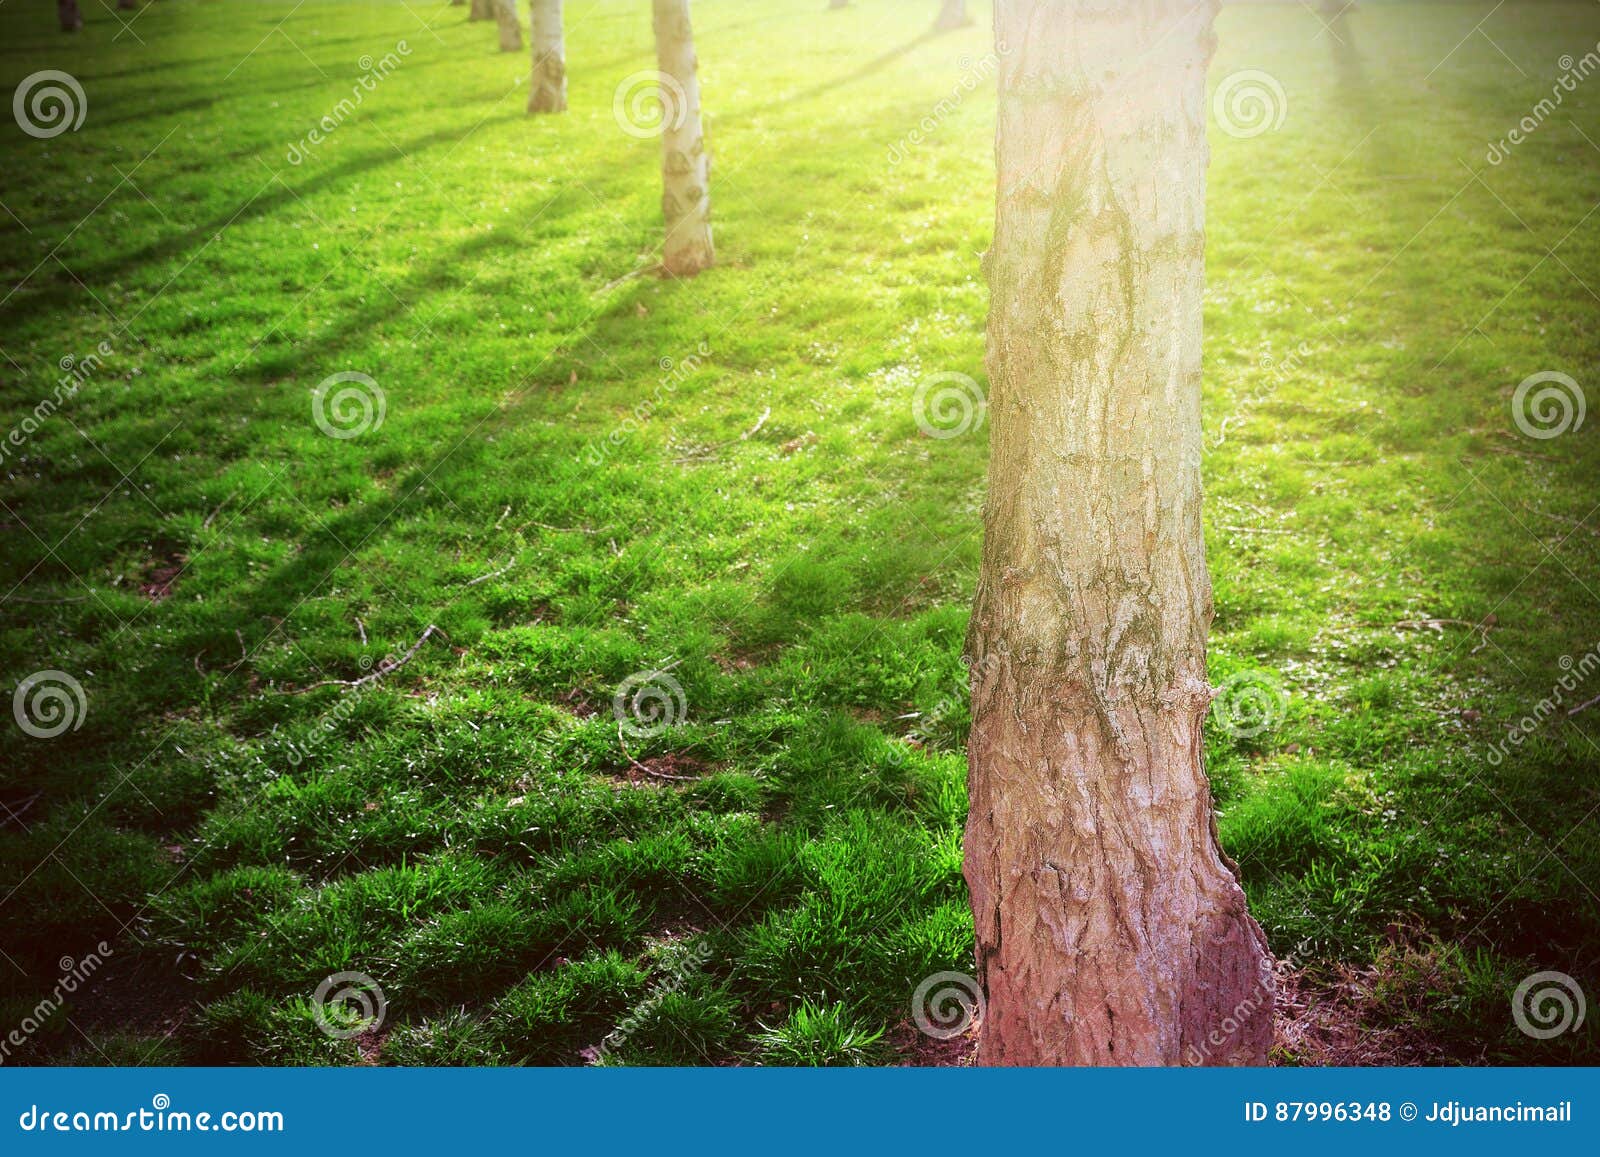 Tree Shadows - Green grass background: Bạn có biết rằng, các bức ảnh chụp bóng cây trên nền cỏ xanh có thể khiến bạn phải ngạc nhiên bởi vẻ đẹp tự nhiên hoàn hảo của chúng. Hãy chiêm ngưỡng những hình ảnh bình yên và lãng mạn với những bóng cây và tia nắng lóng lánh, một điều tuyệt vời để thư giãn trong cuộc sống hiện đại hối hả.